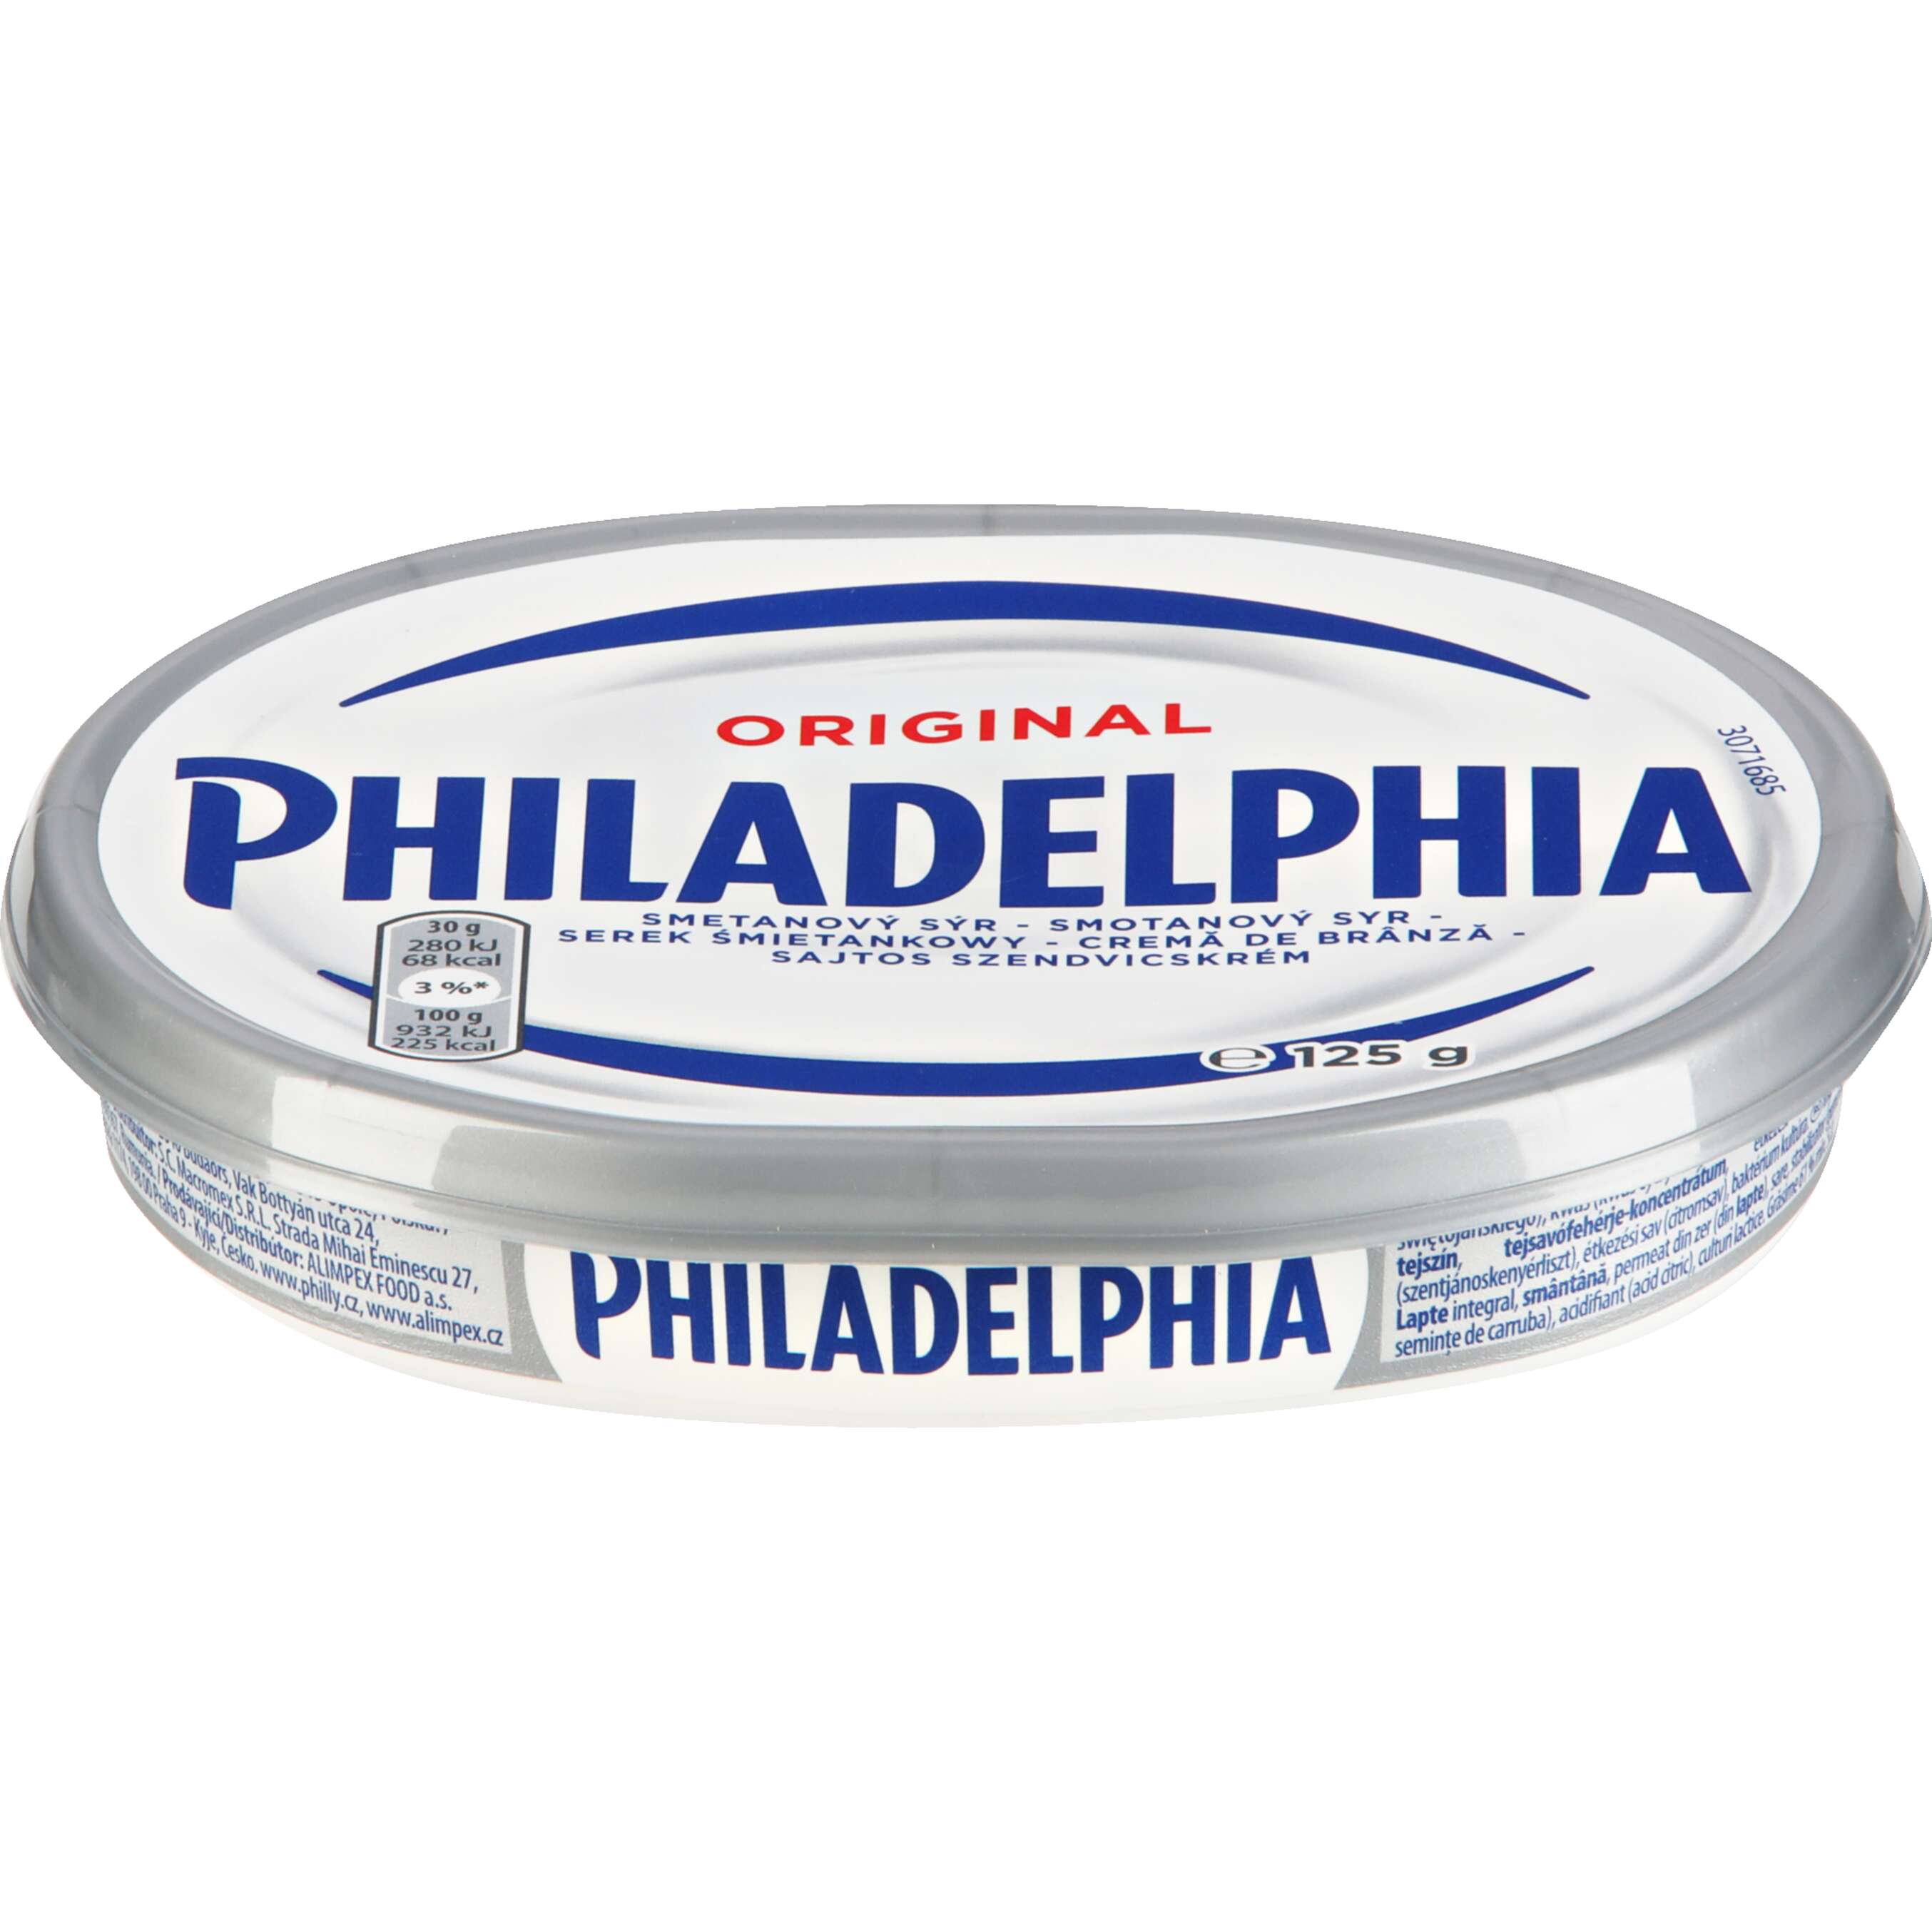 Zobrazit nabídku Philadelphia Čerstvý smetanový sýr